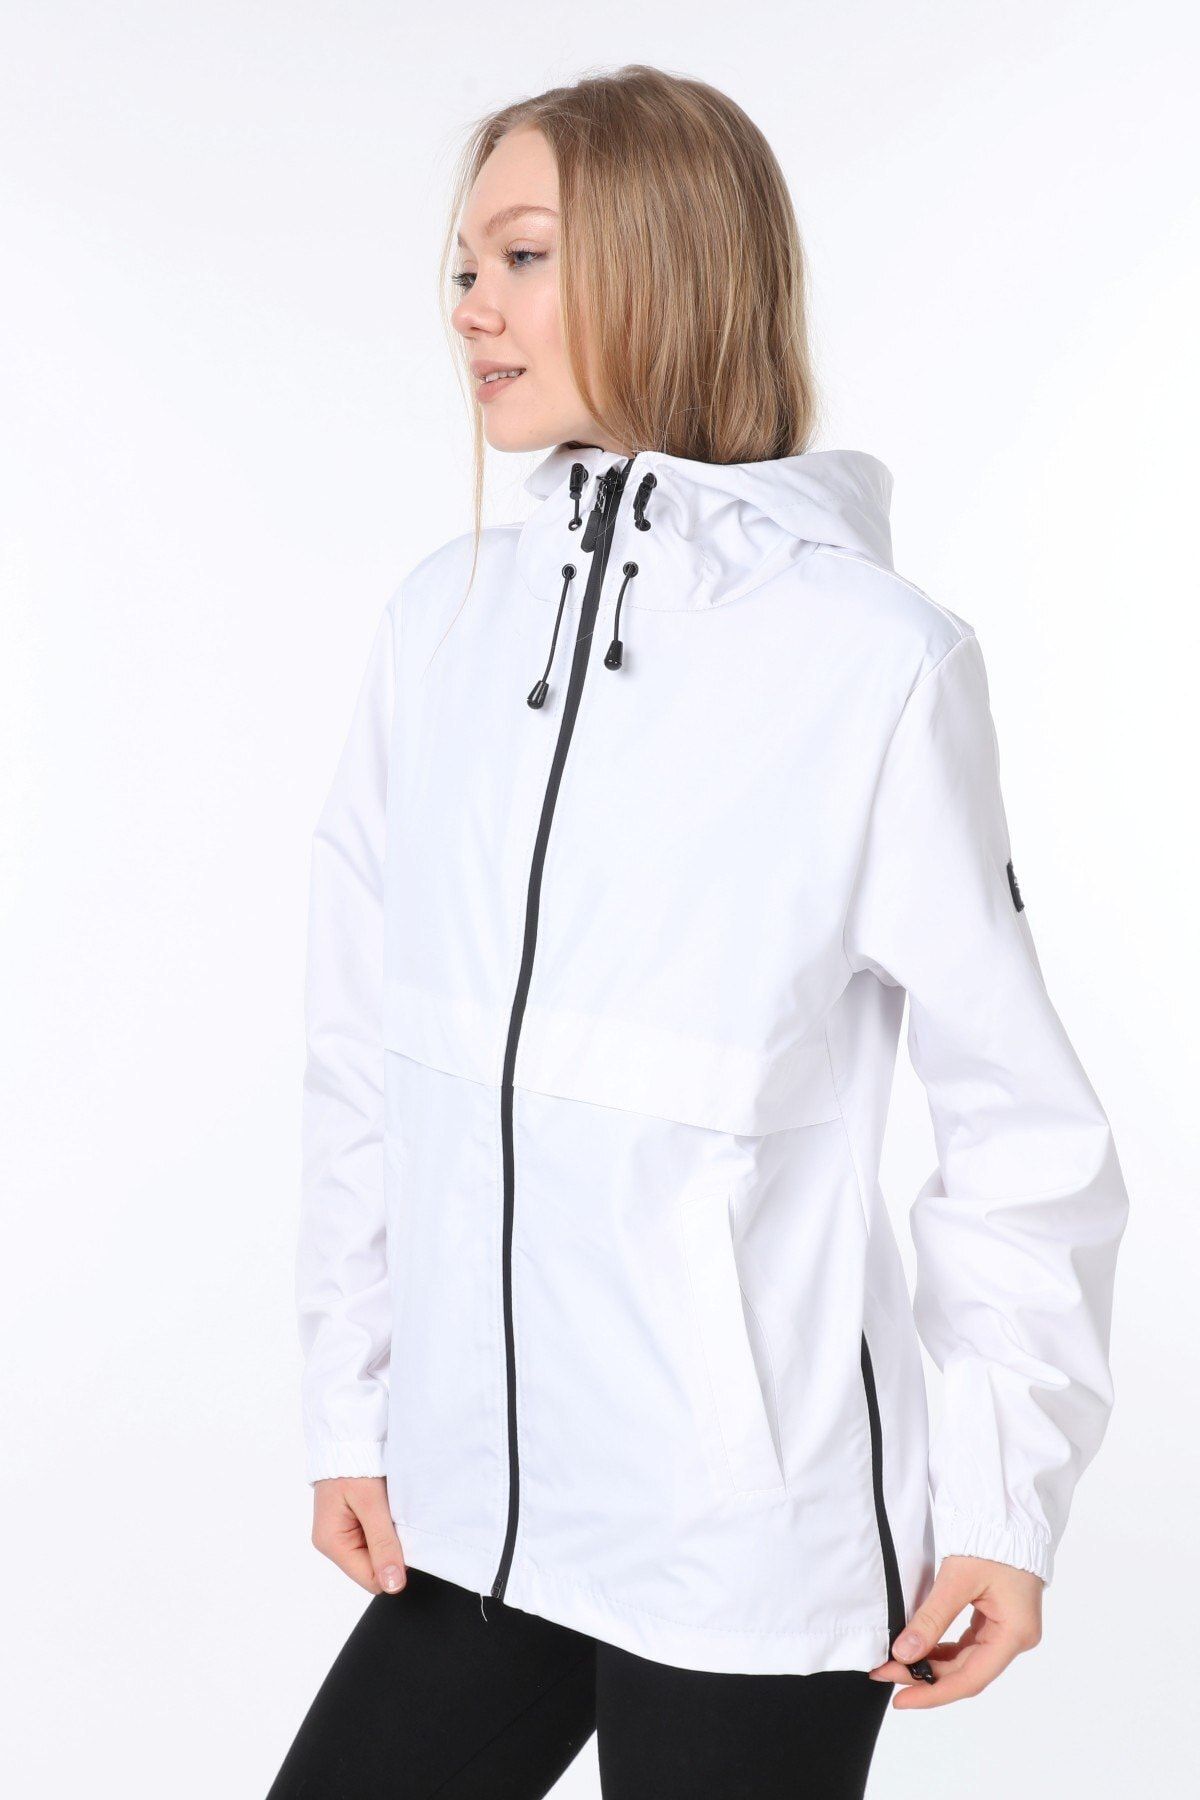 Ghassy Co Kadın Rüzgarlık/yağmurluk Yırtmaç Detaylı Mevsimlik Beyaz Spor Ceket